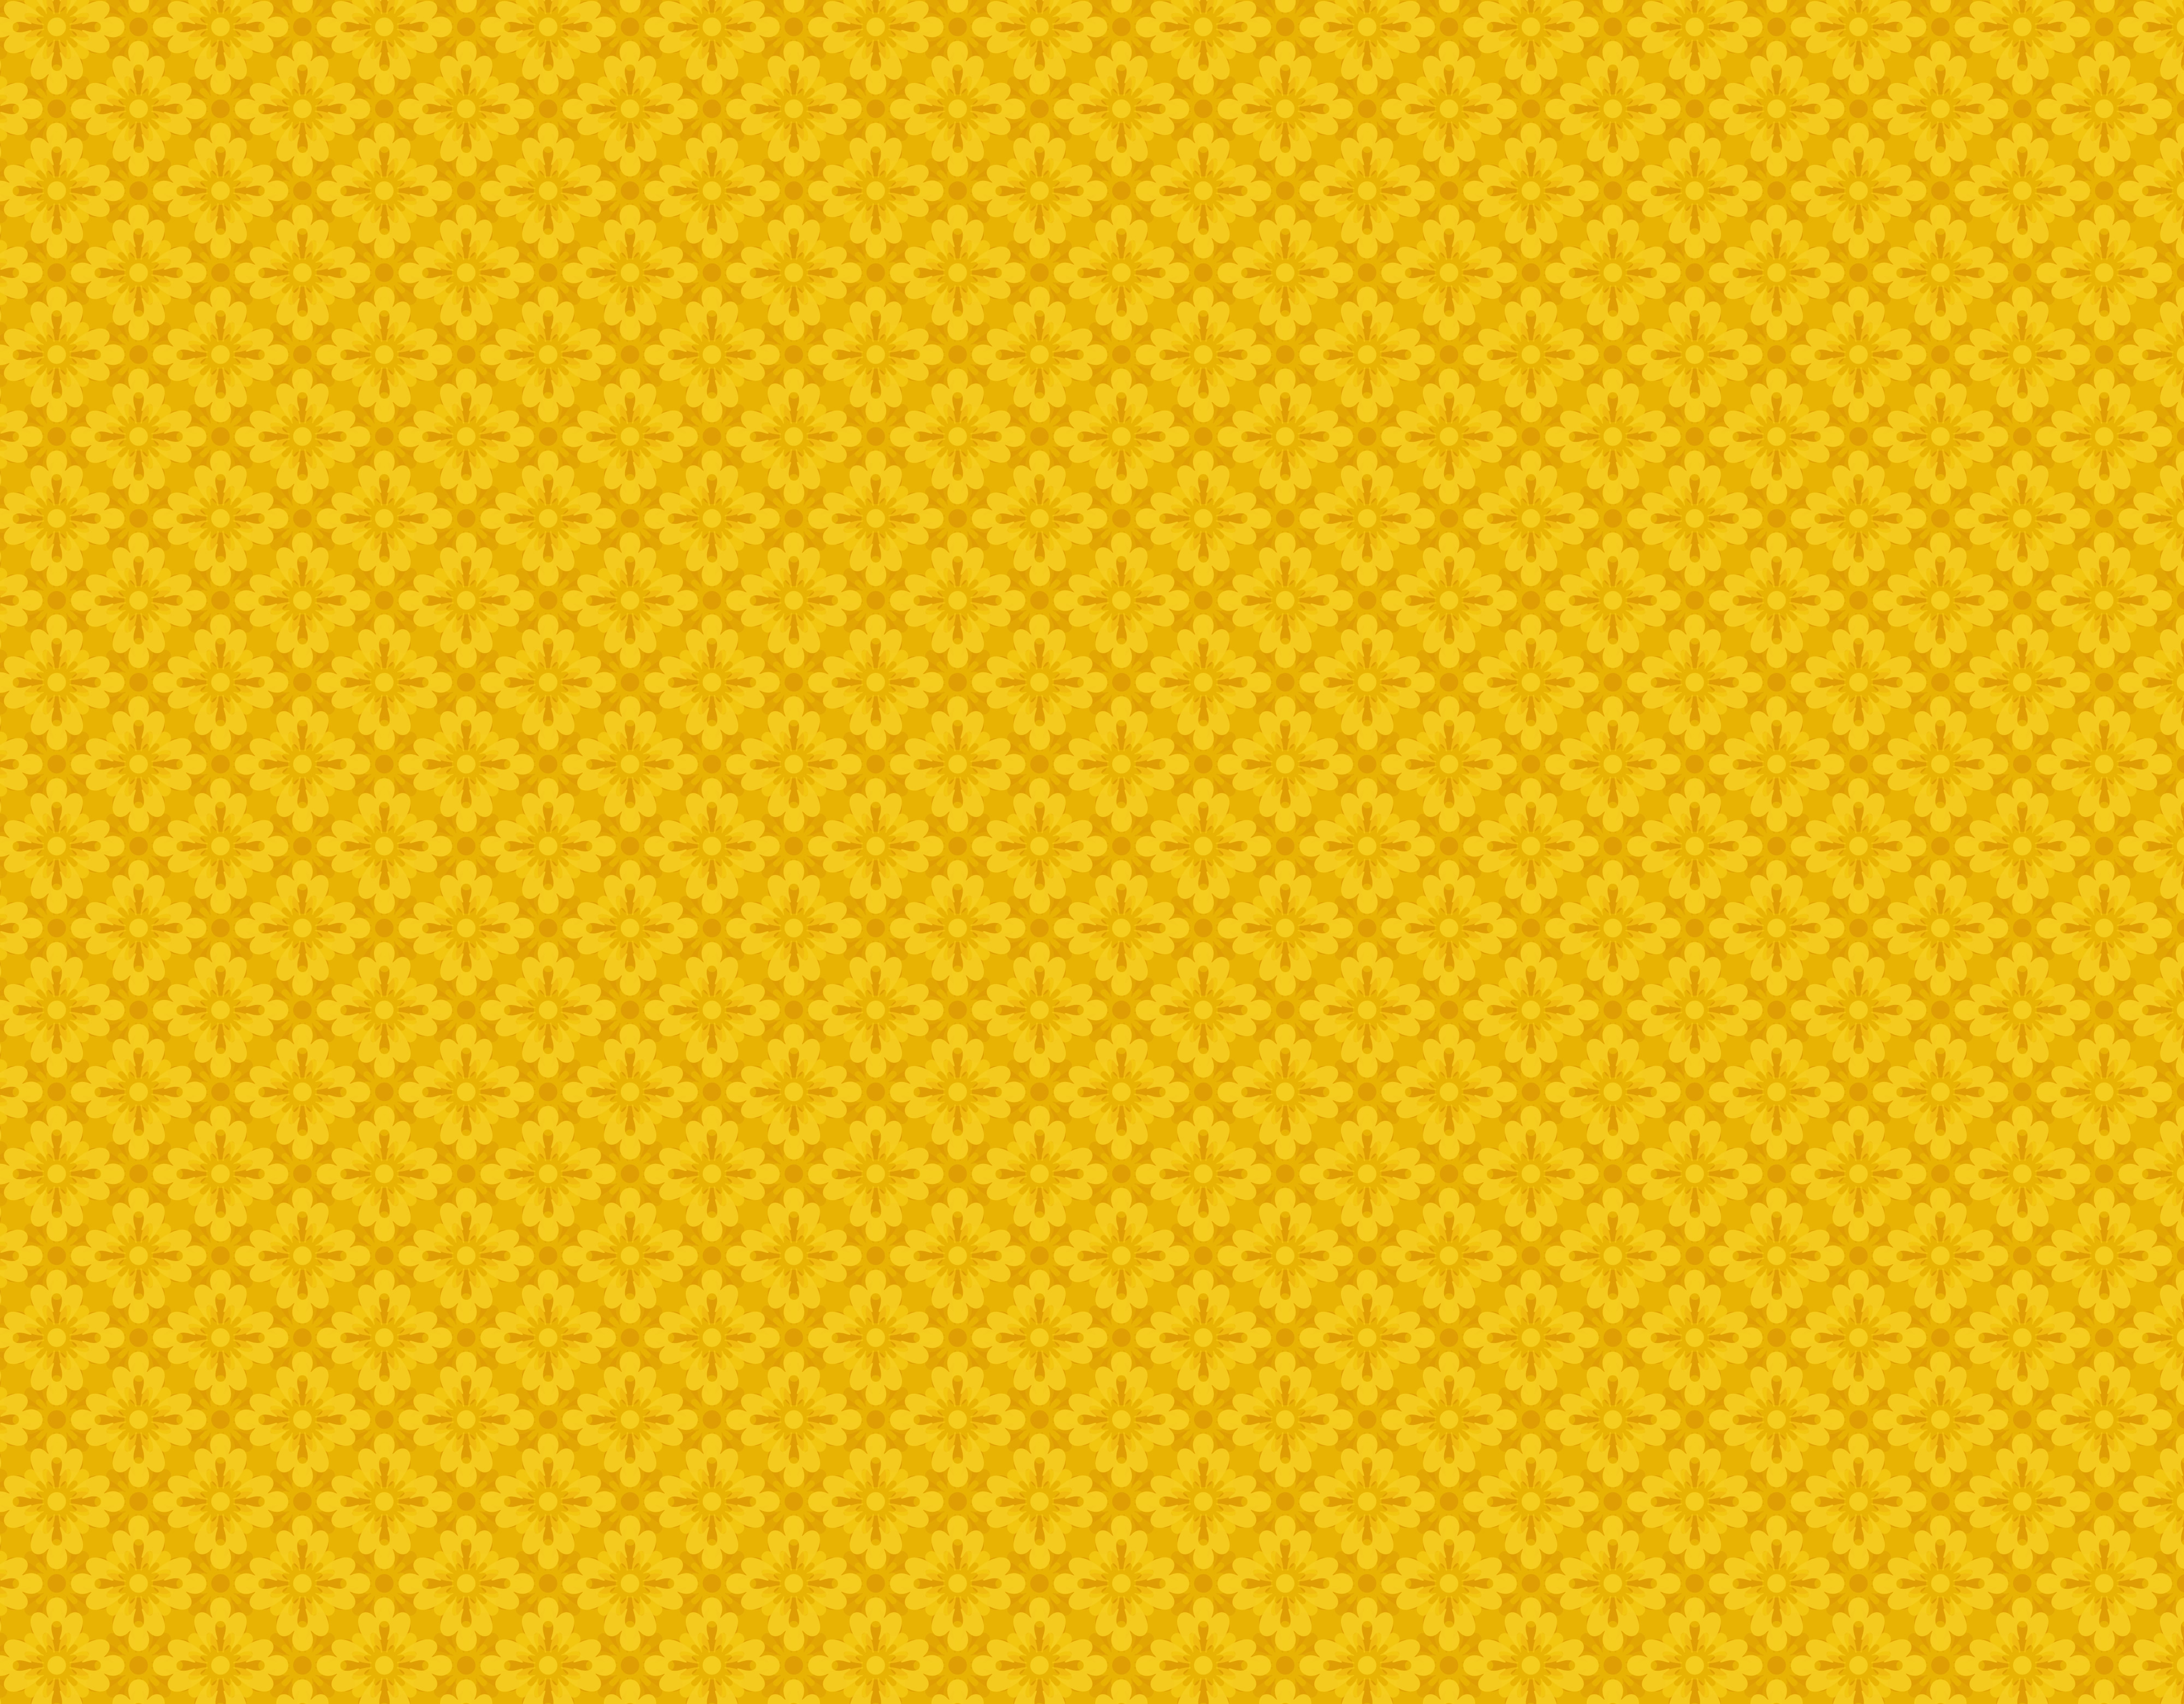 yellow pattern, background